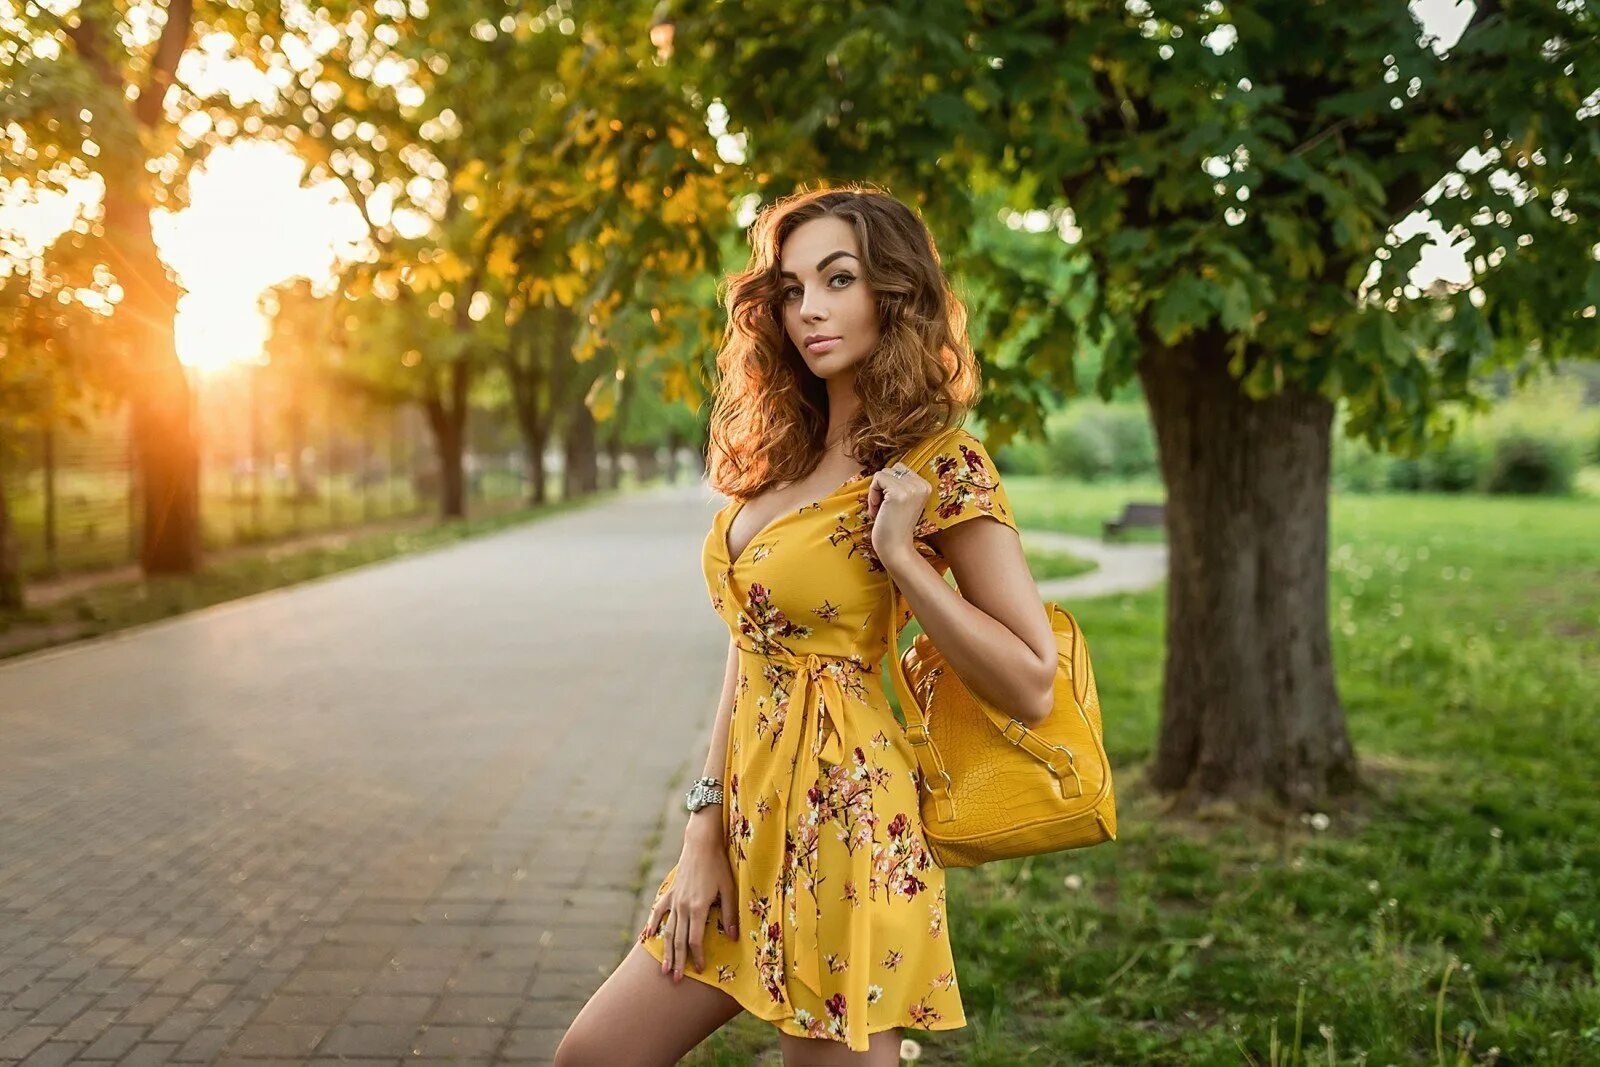 Девушка в летнем платье. Девушка в платье летнем. Девушка в желтом платье. Красивая девушка в желтом платье. Фотосессия в парке.